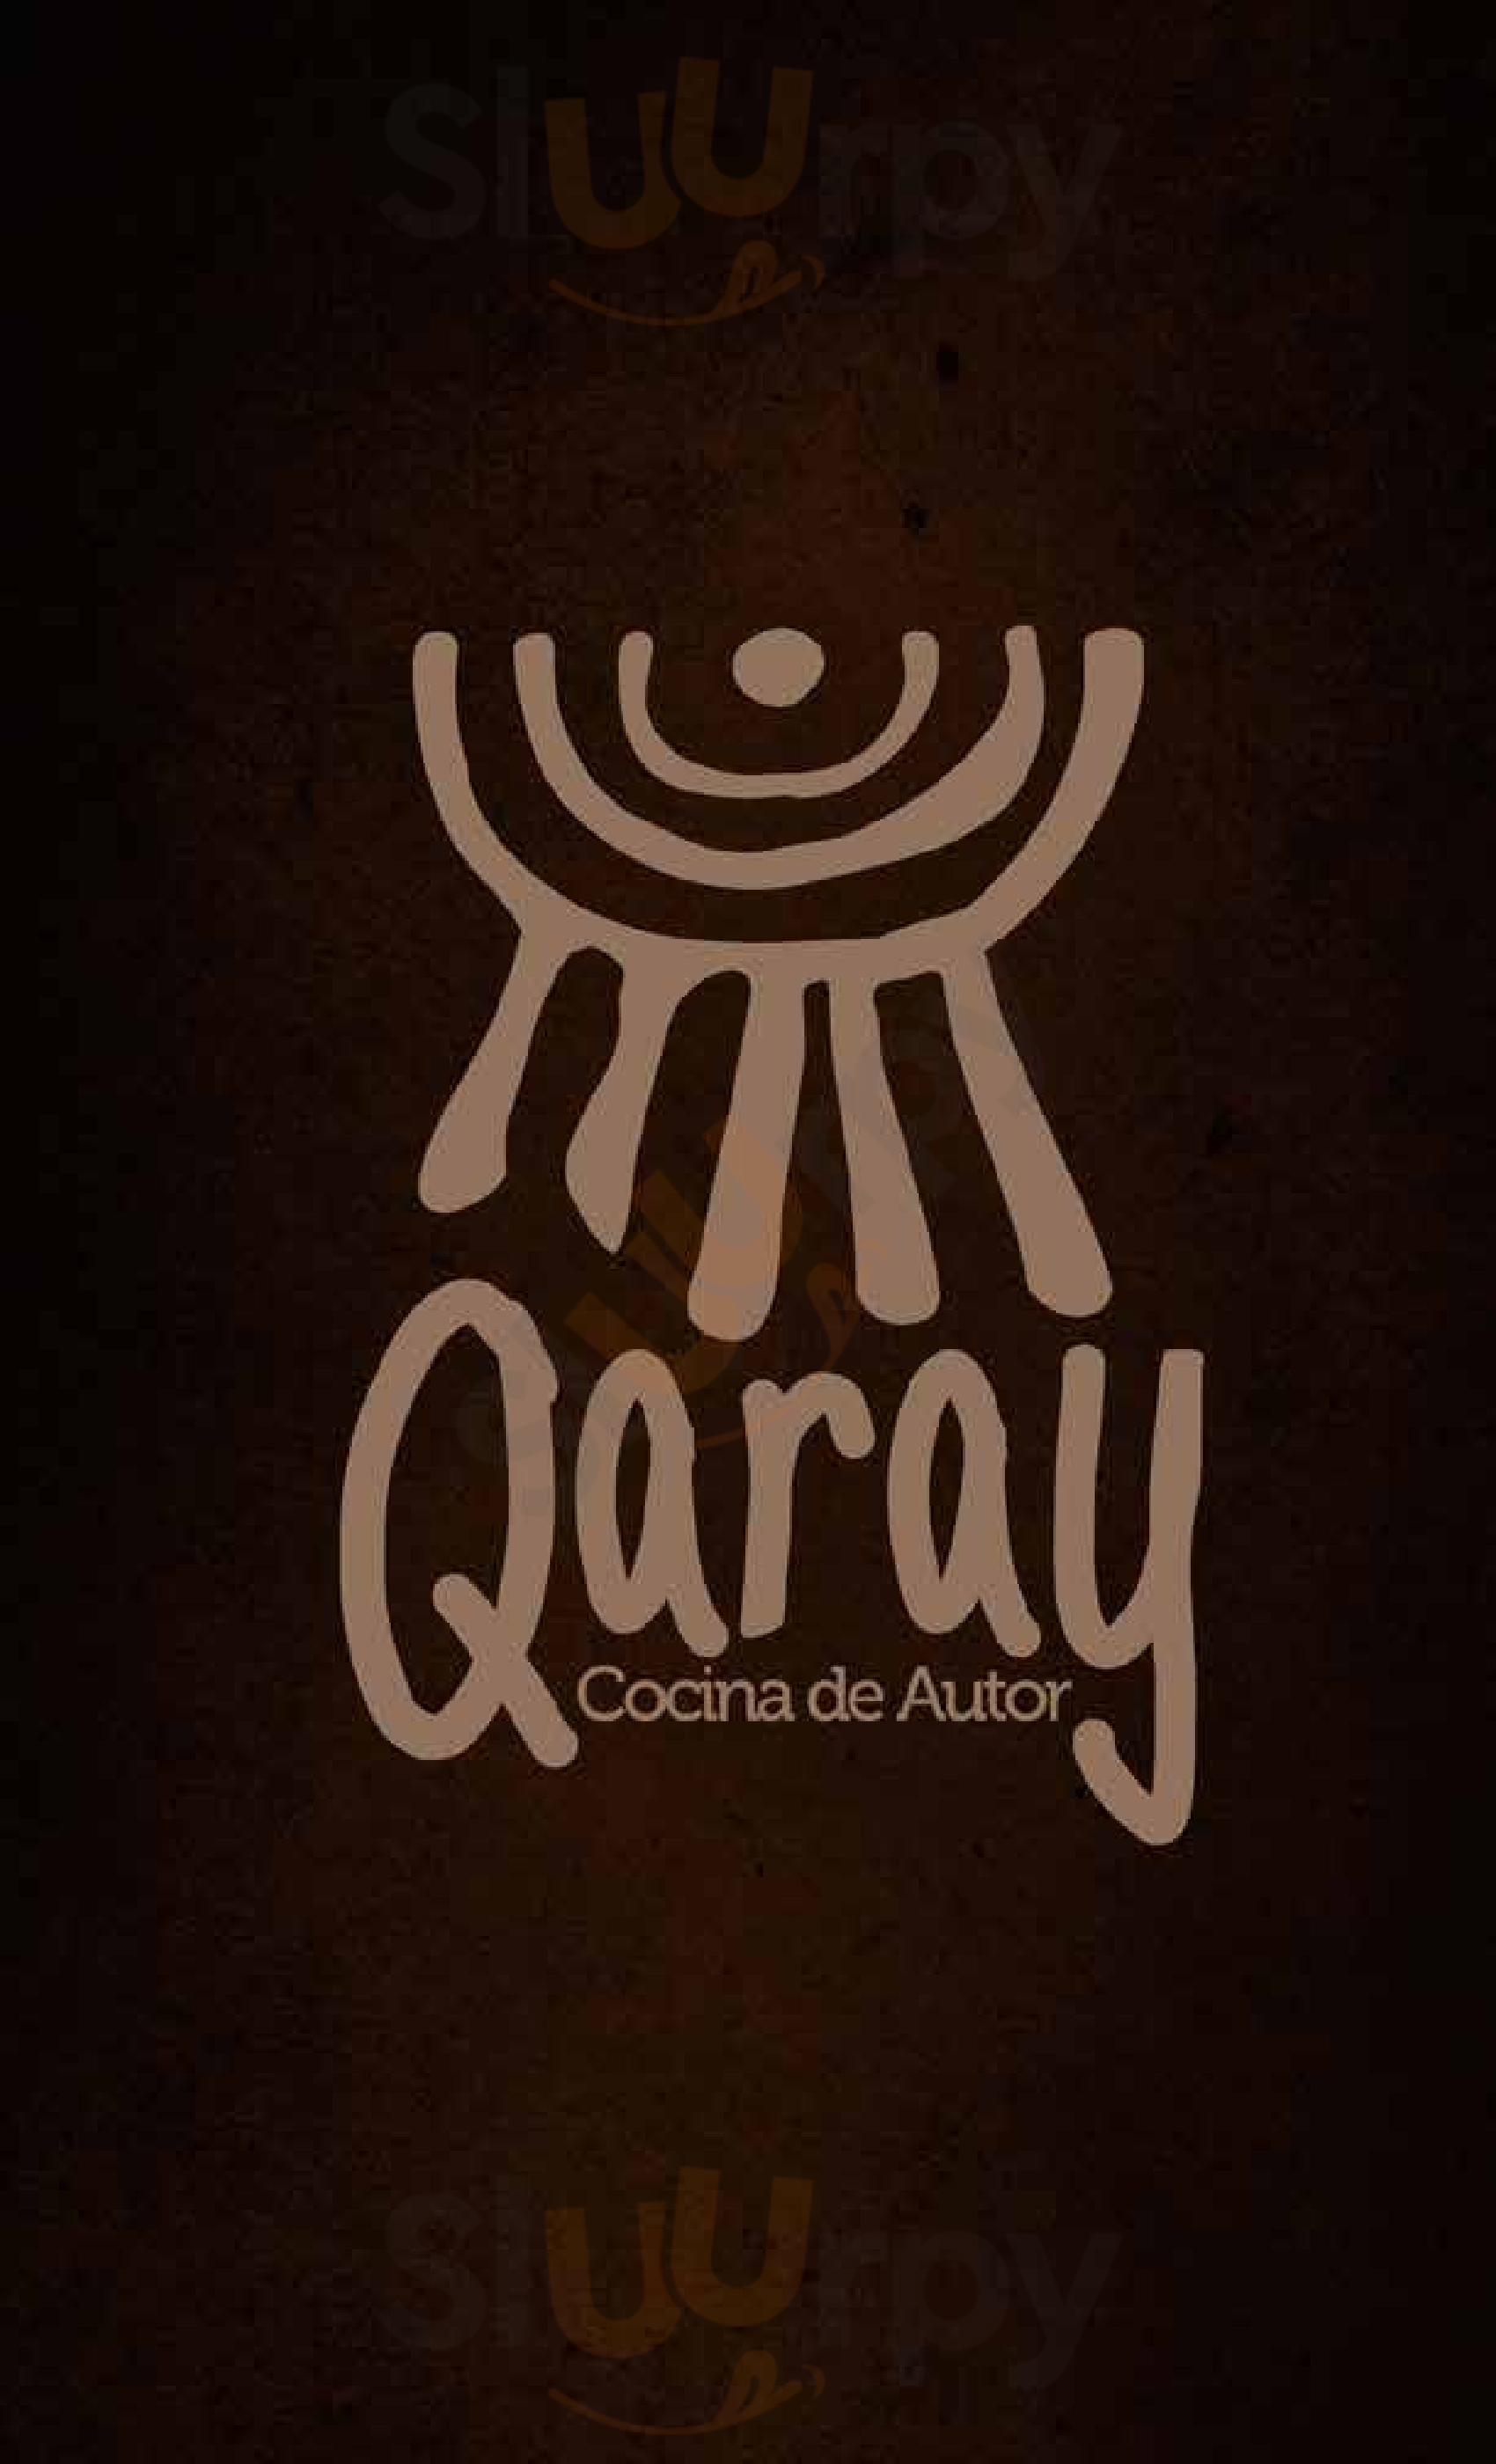 Qaray Popayán Menu - 1